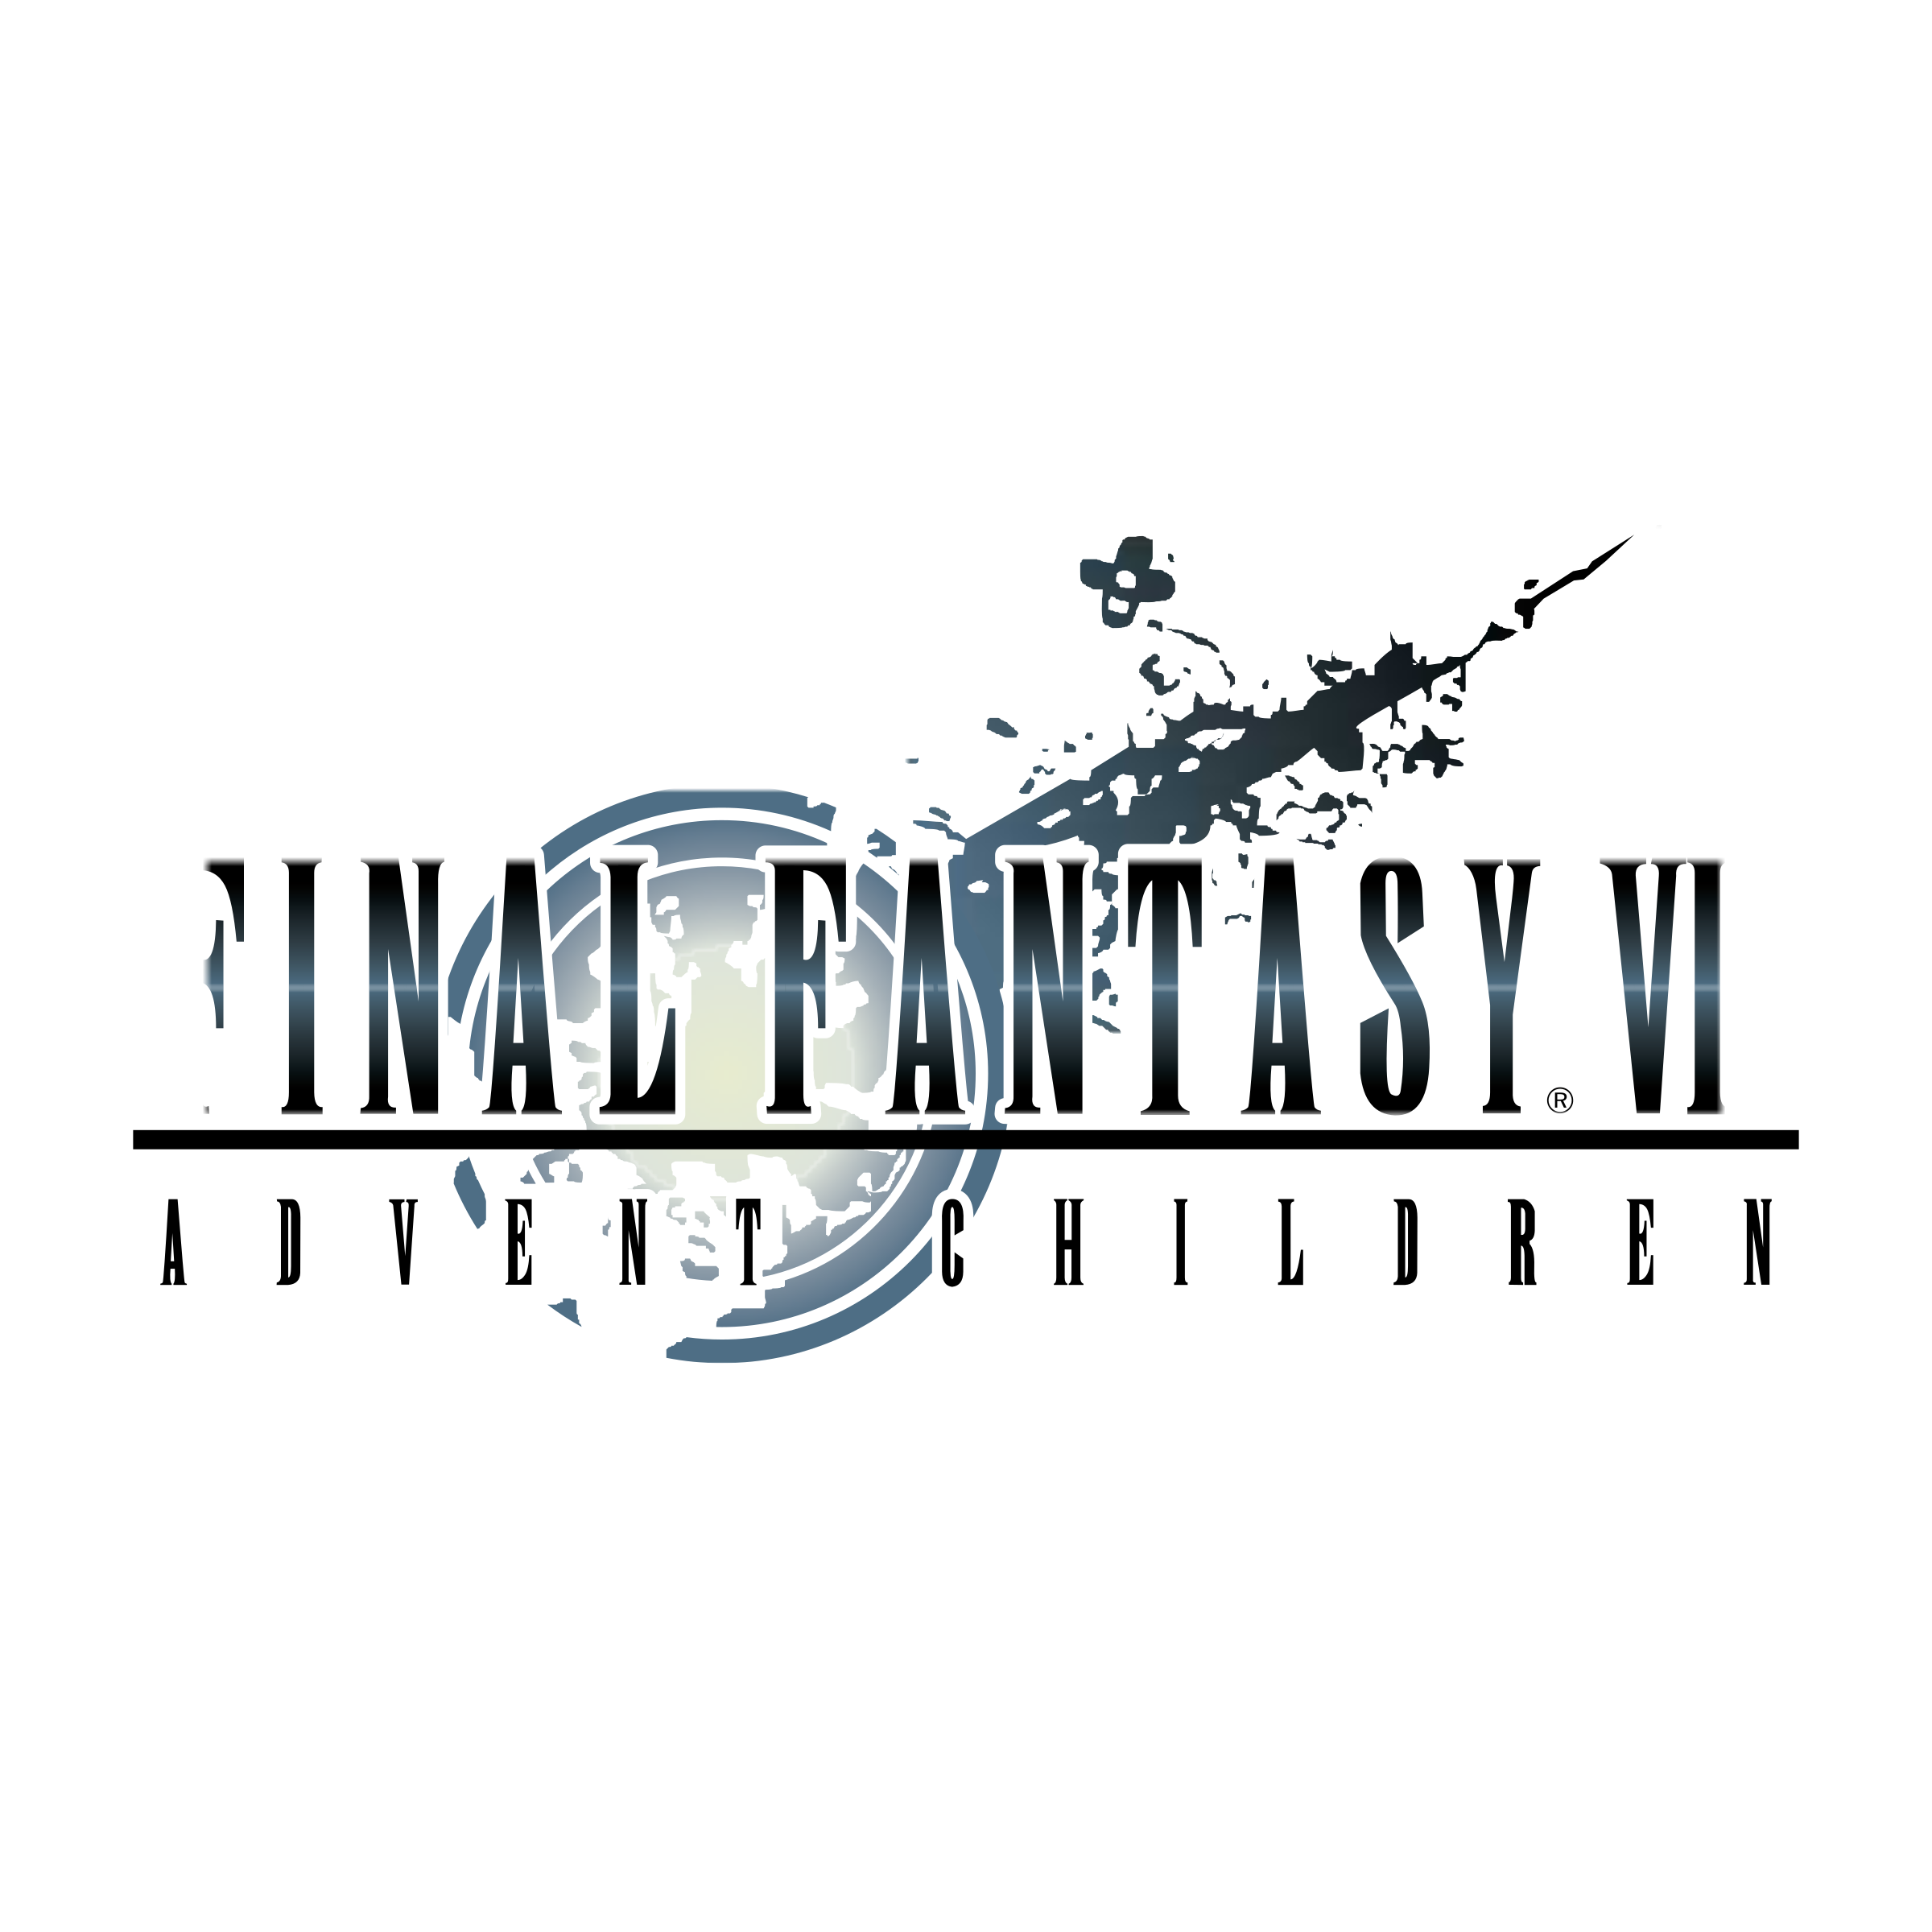 Final Fantasy logo pcture